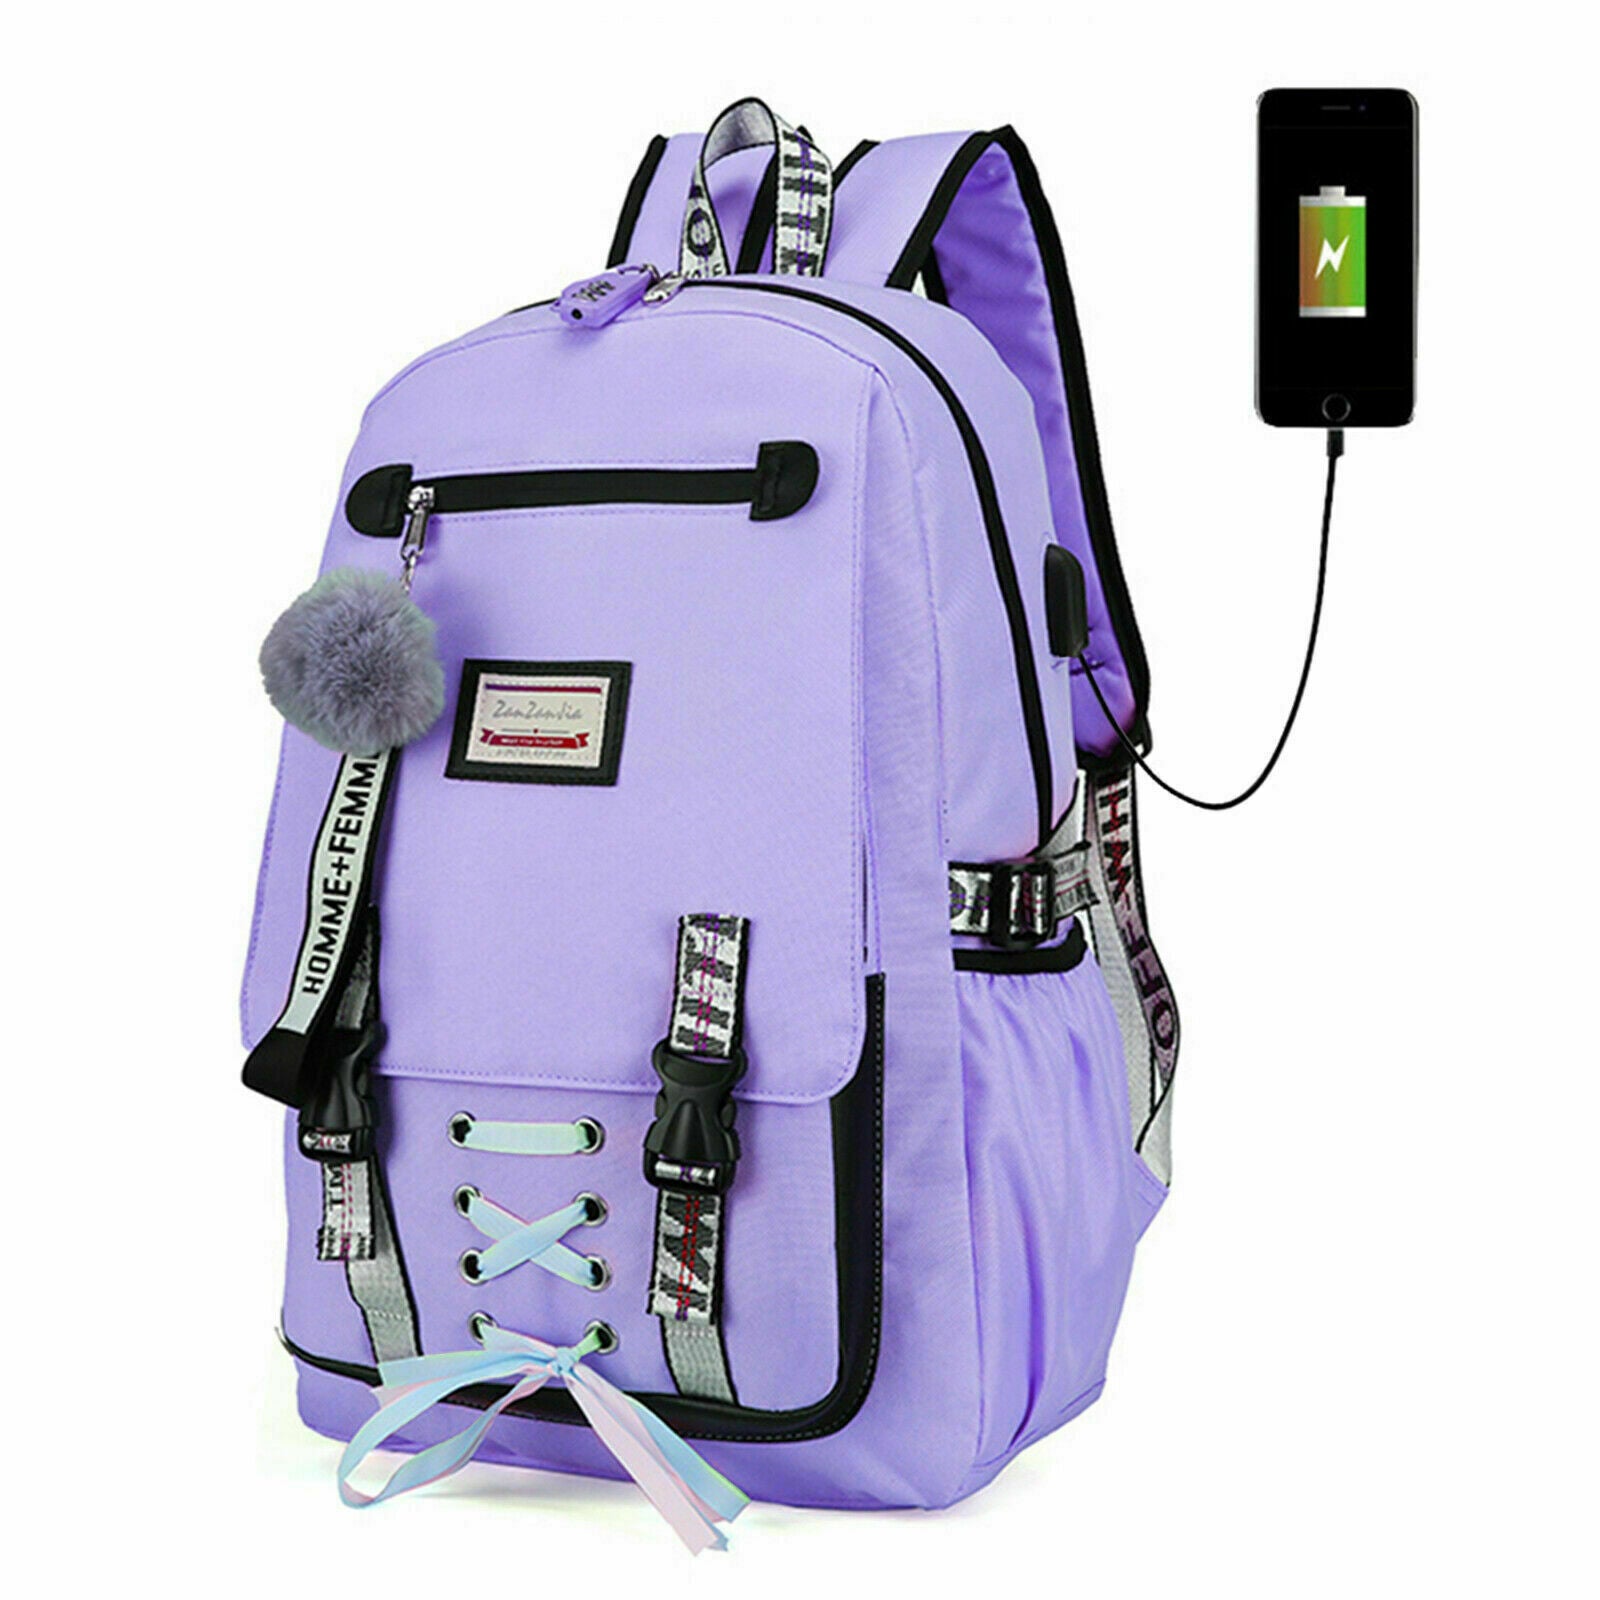 Buy Ross Brown Women Purple Handbag PURPLE Online @ Best Price in India |  Flipkart.com